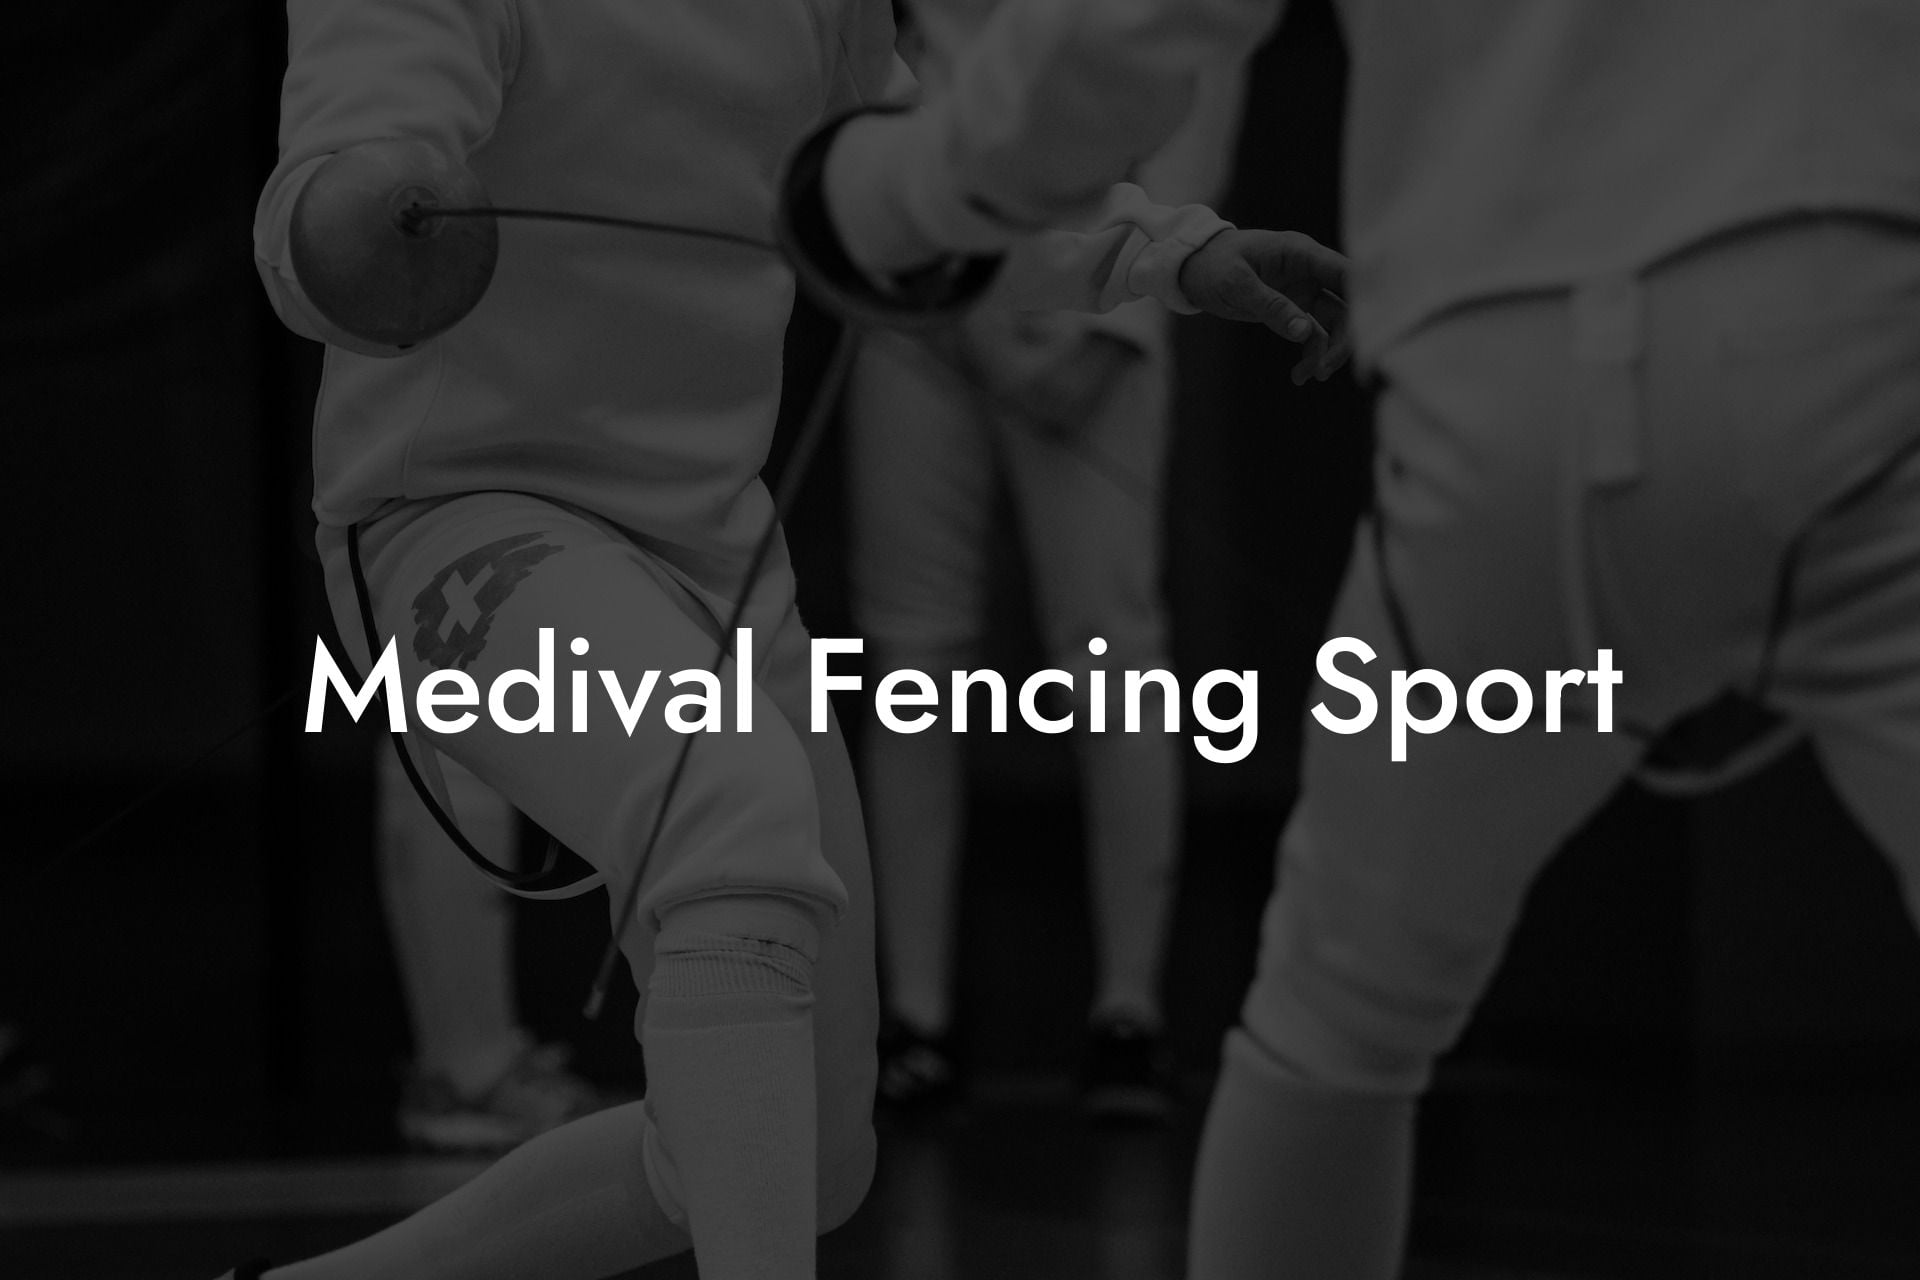 Medival Fencing Sport